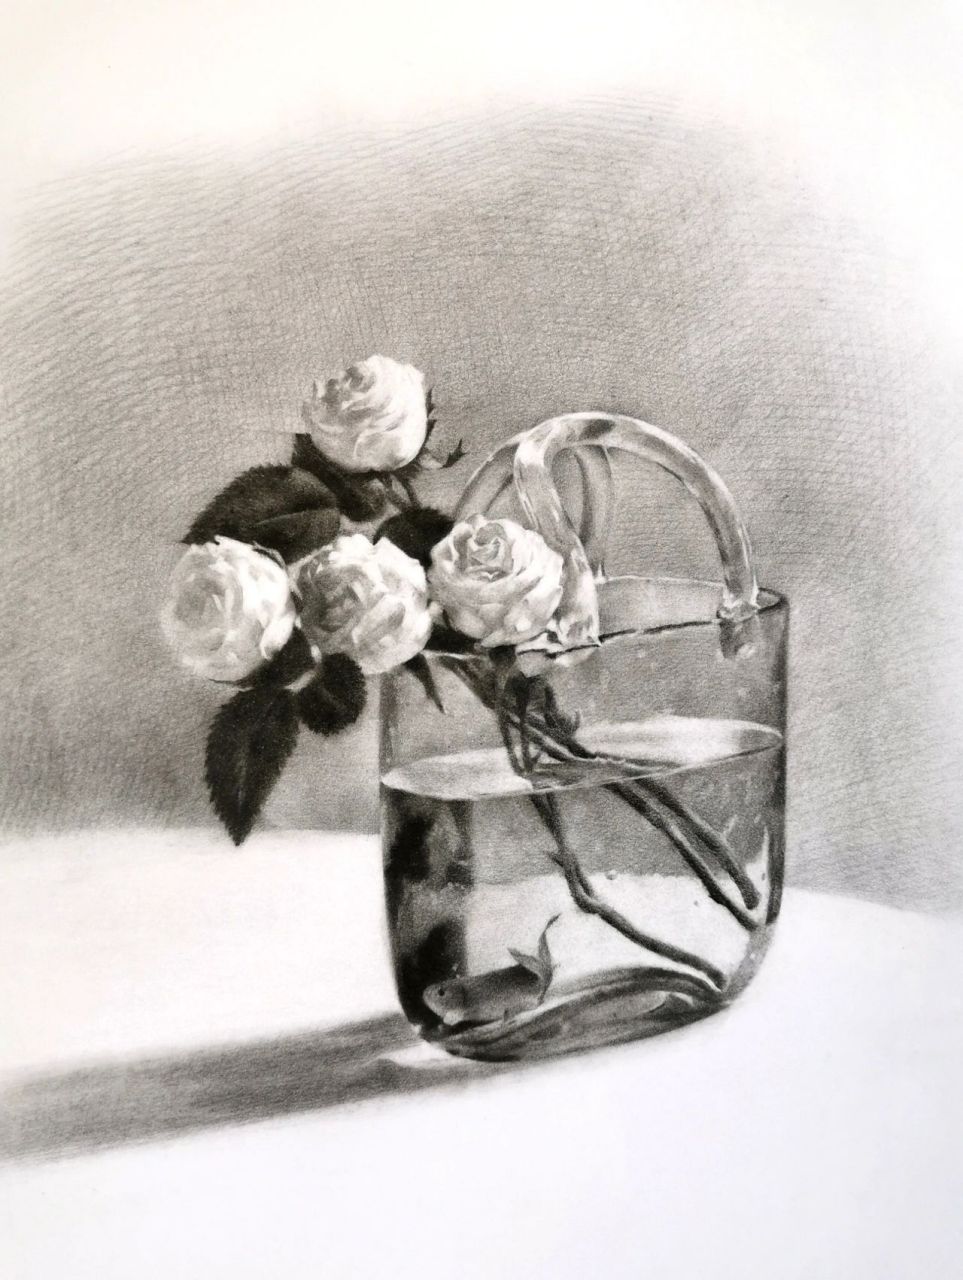 素描静物之玻璃花瓶 多画几个大家都喜欢看的玻璃质感的花瓶静物 